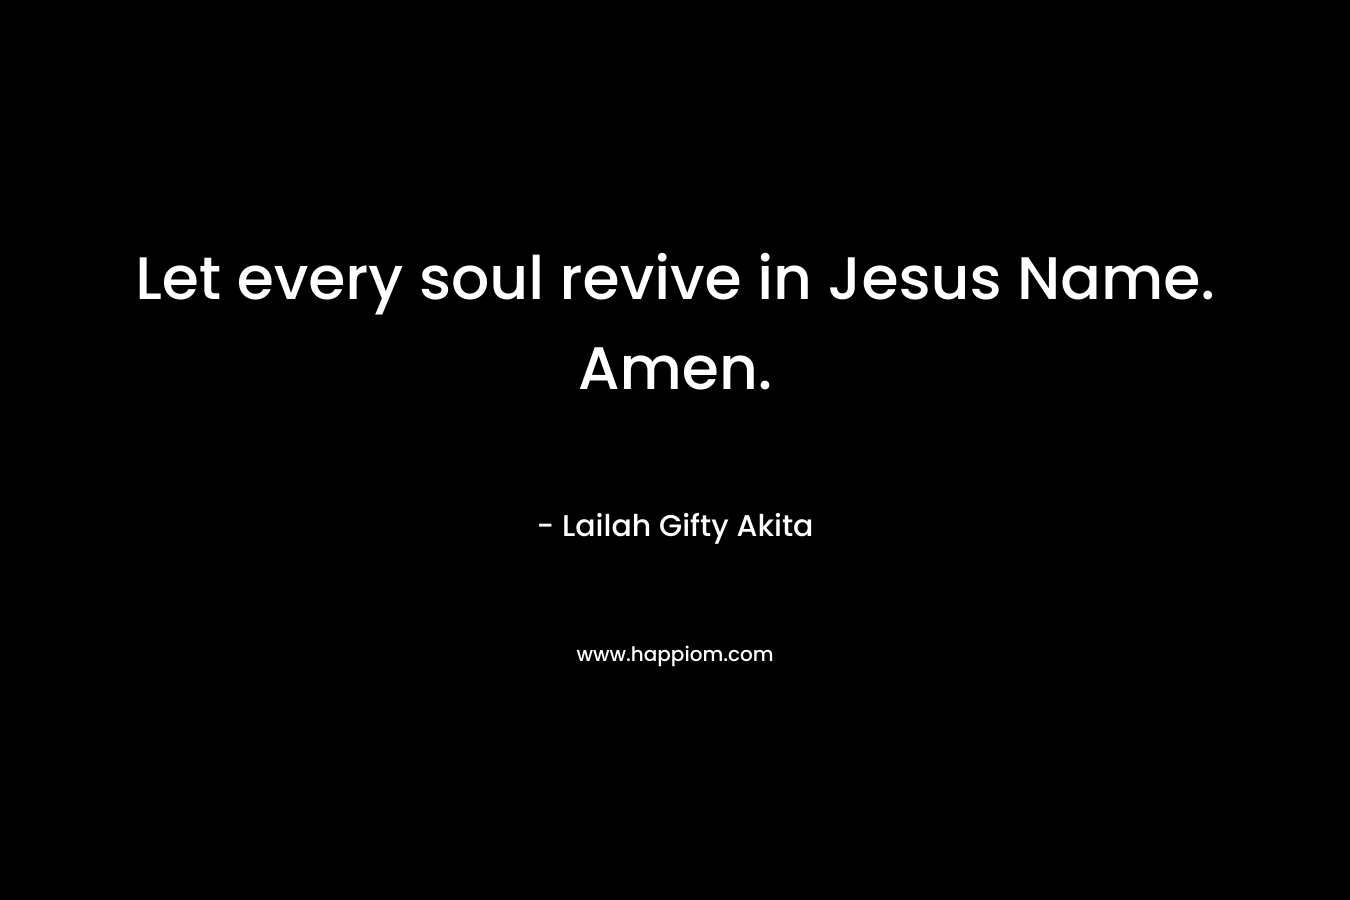 Let every soul revive in Jesus Name. Amen.